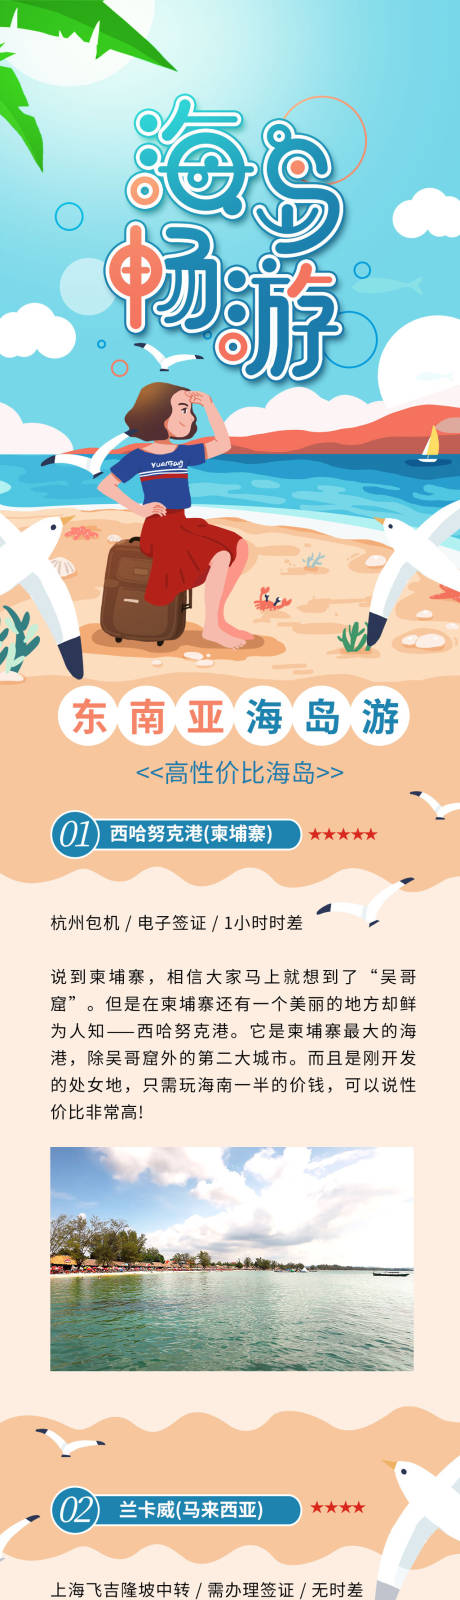 国庆海岛畅游旅游攻略海滩背景信息长图-源文件